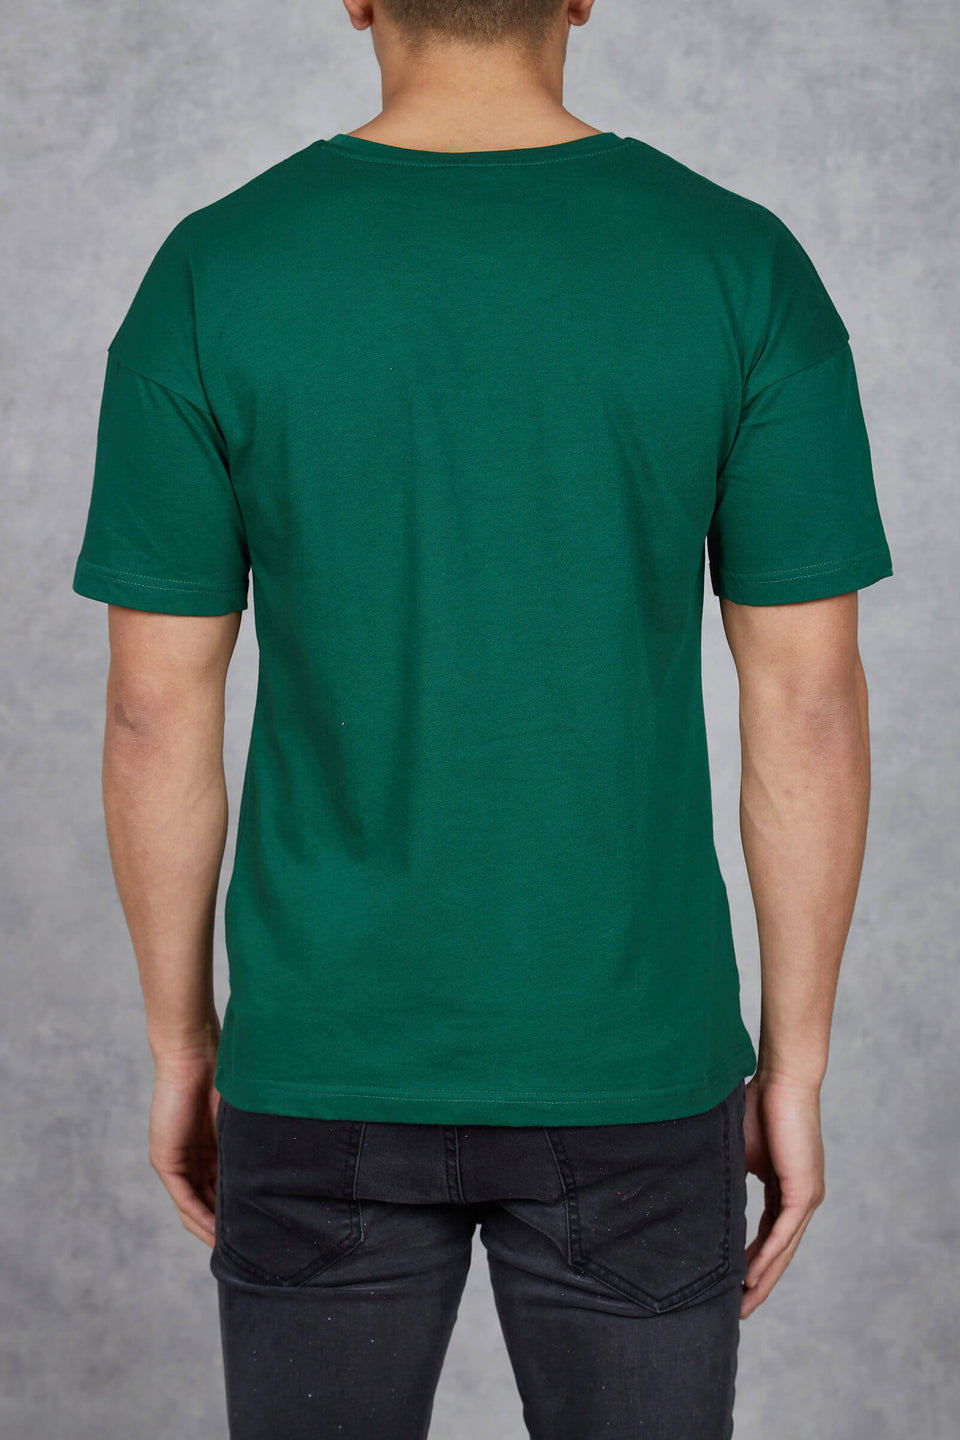 Premium Goods T-Shirt - Forest Green